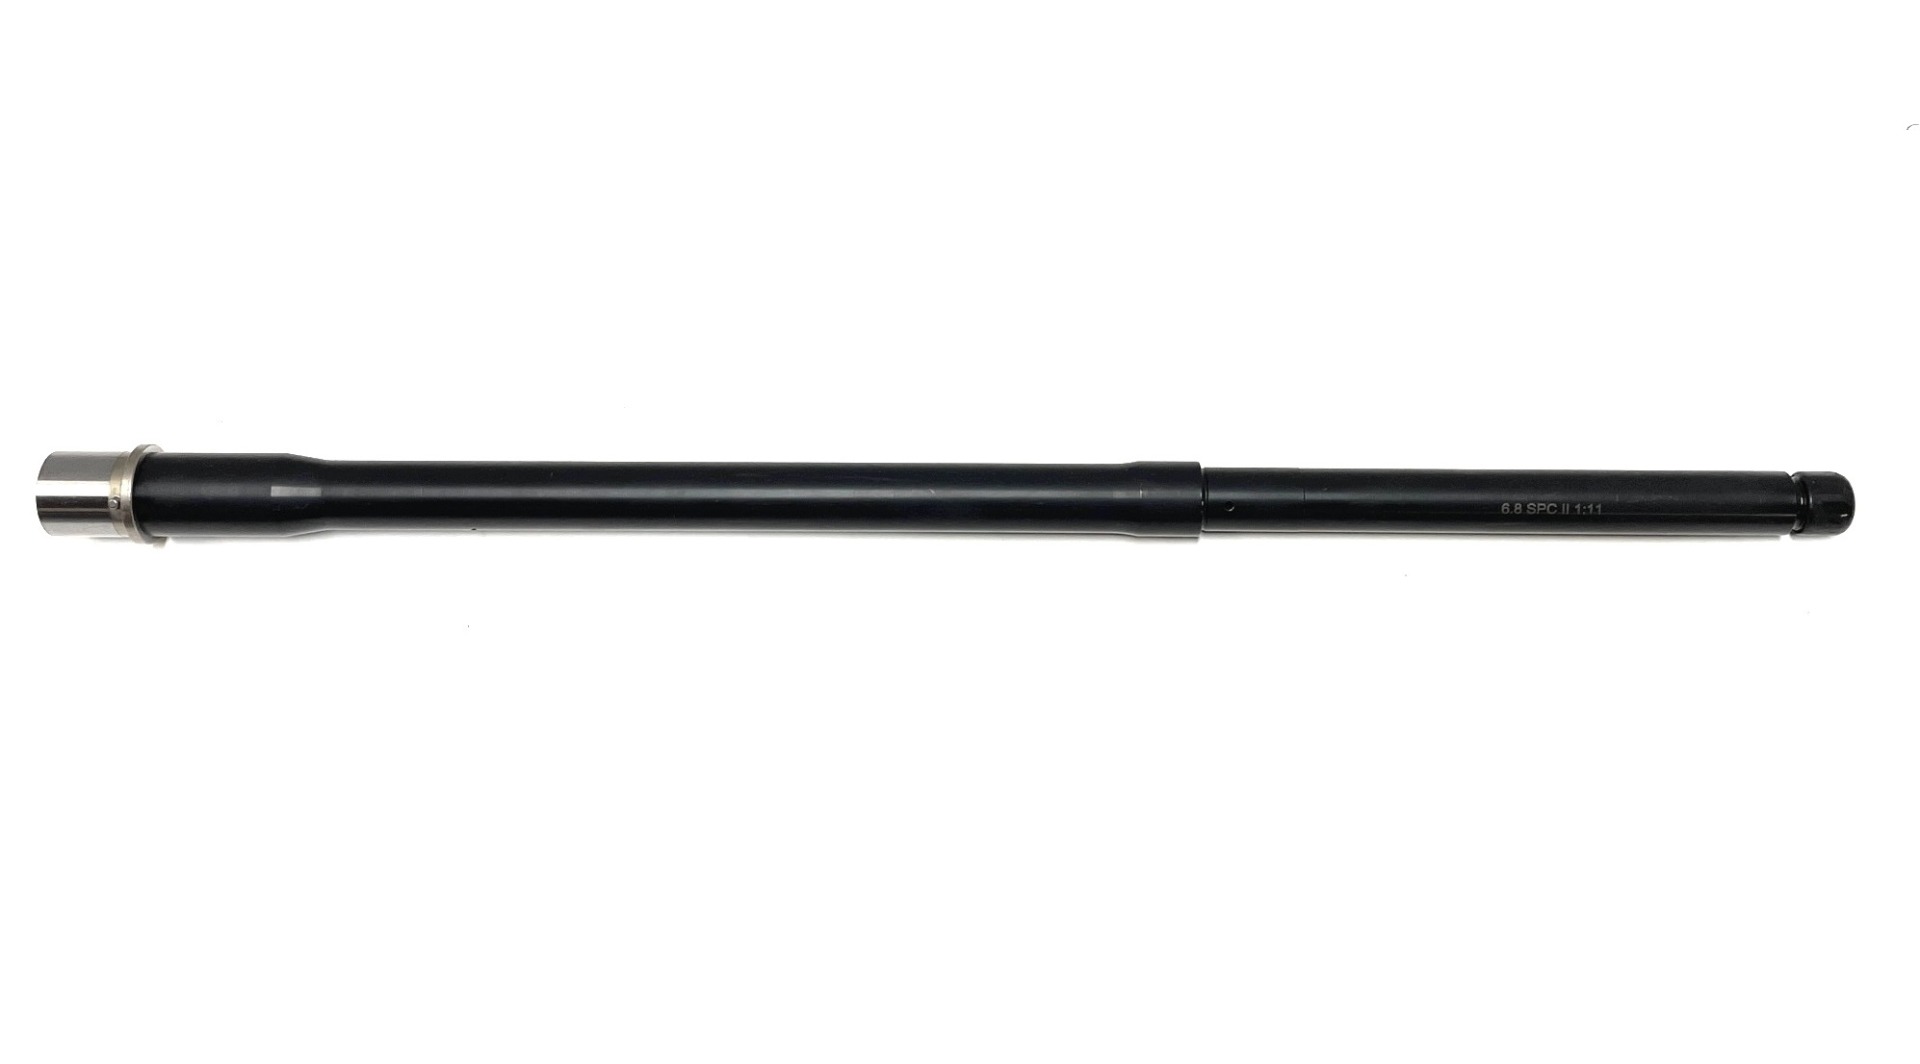 Tactical Kinetics 20 inch 6.8 SPC II AR-15 Melonite 1/11 Twist Barrel